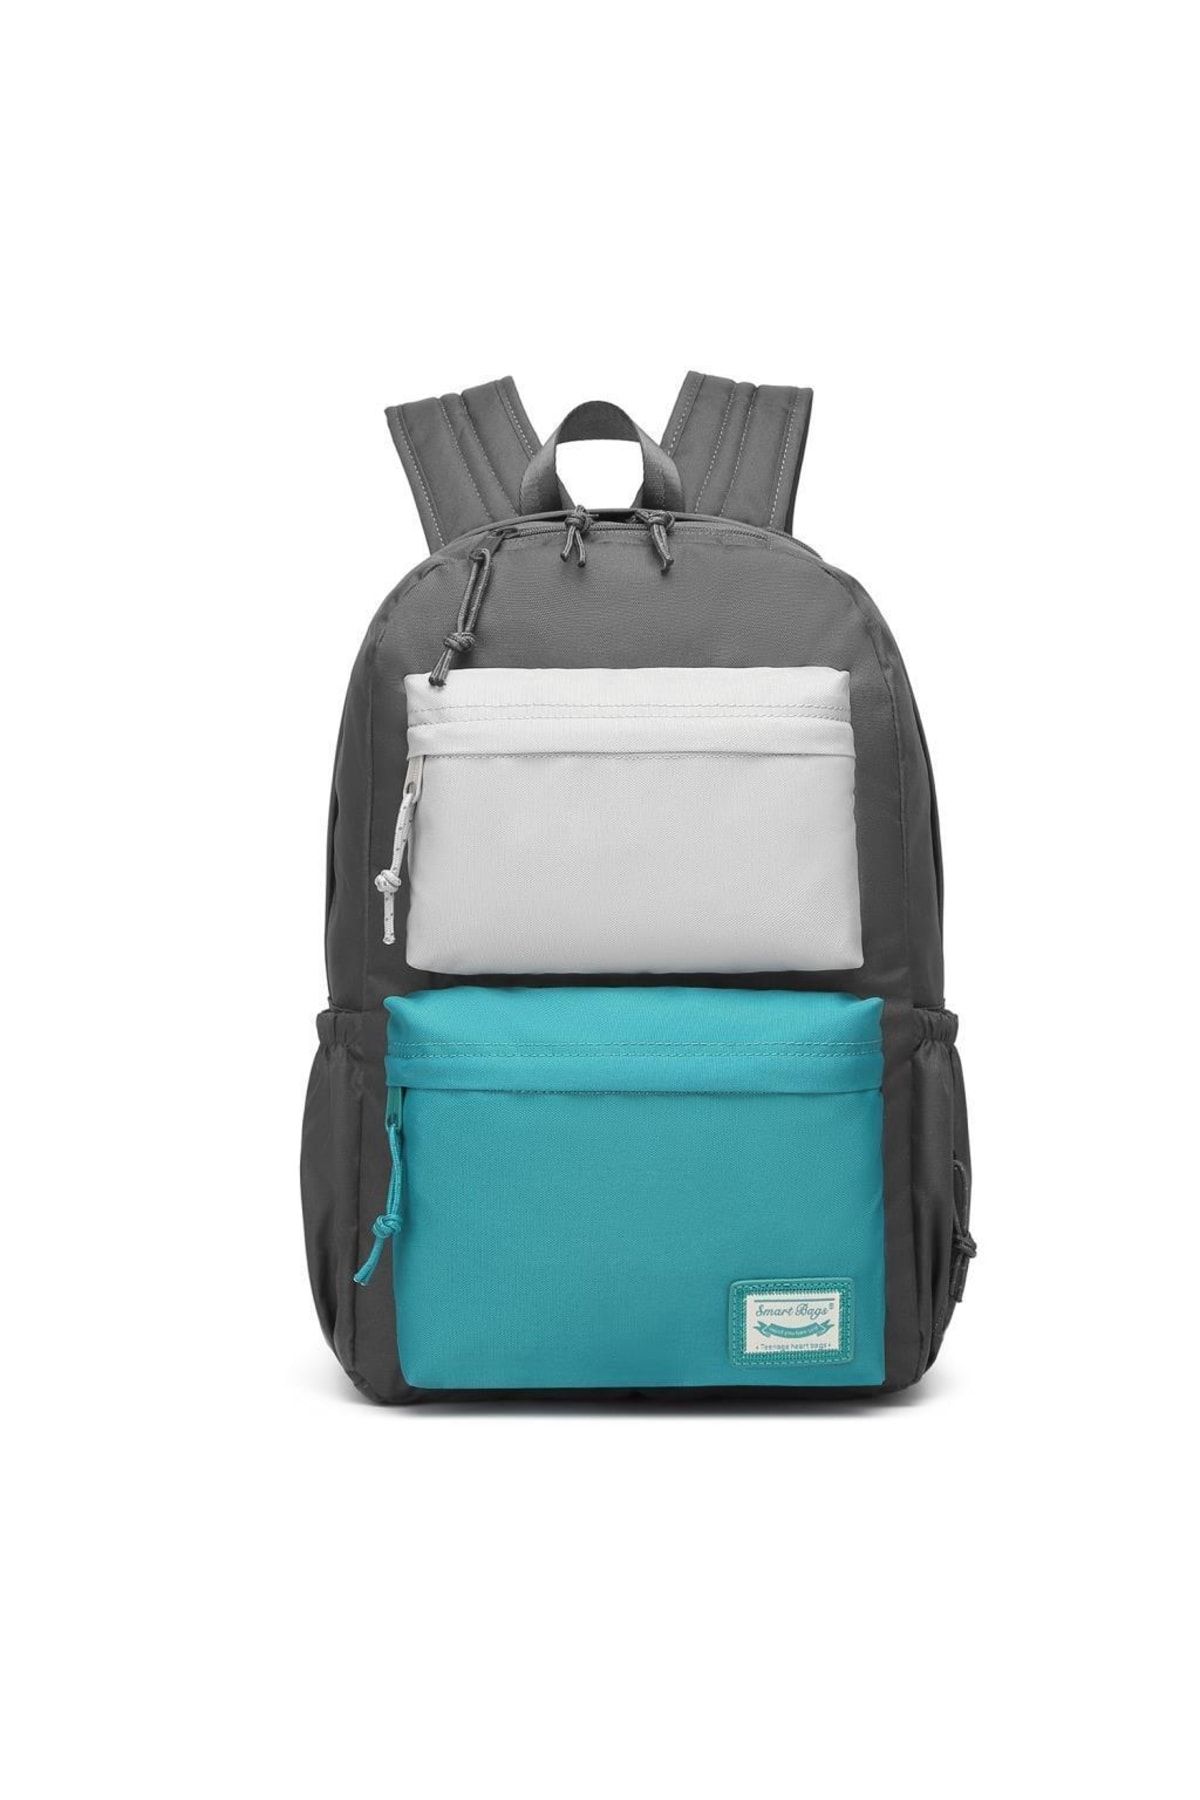 Smart Bags Sırt Çantası Okul Boyu Laptop Gözlü 3155